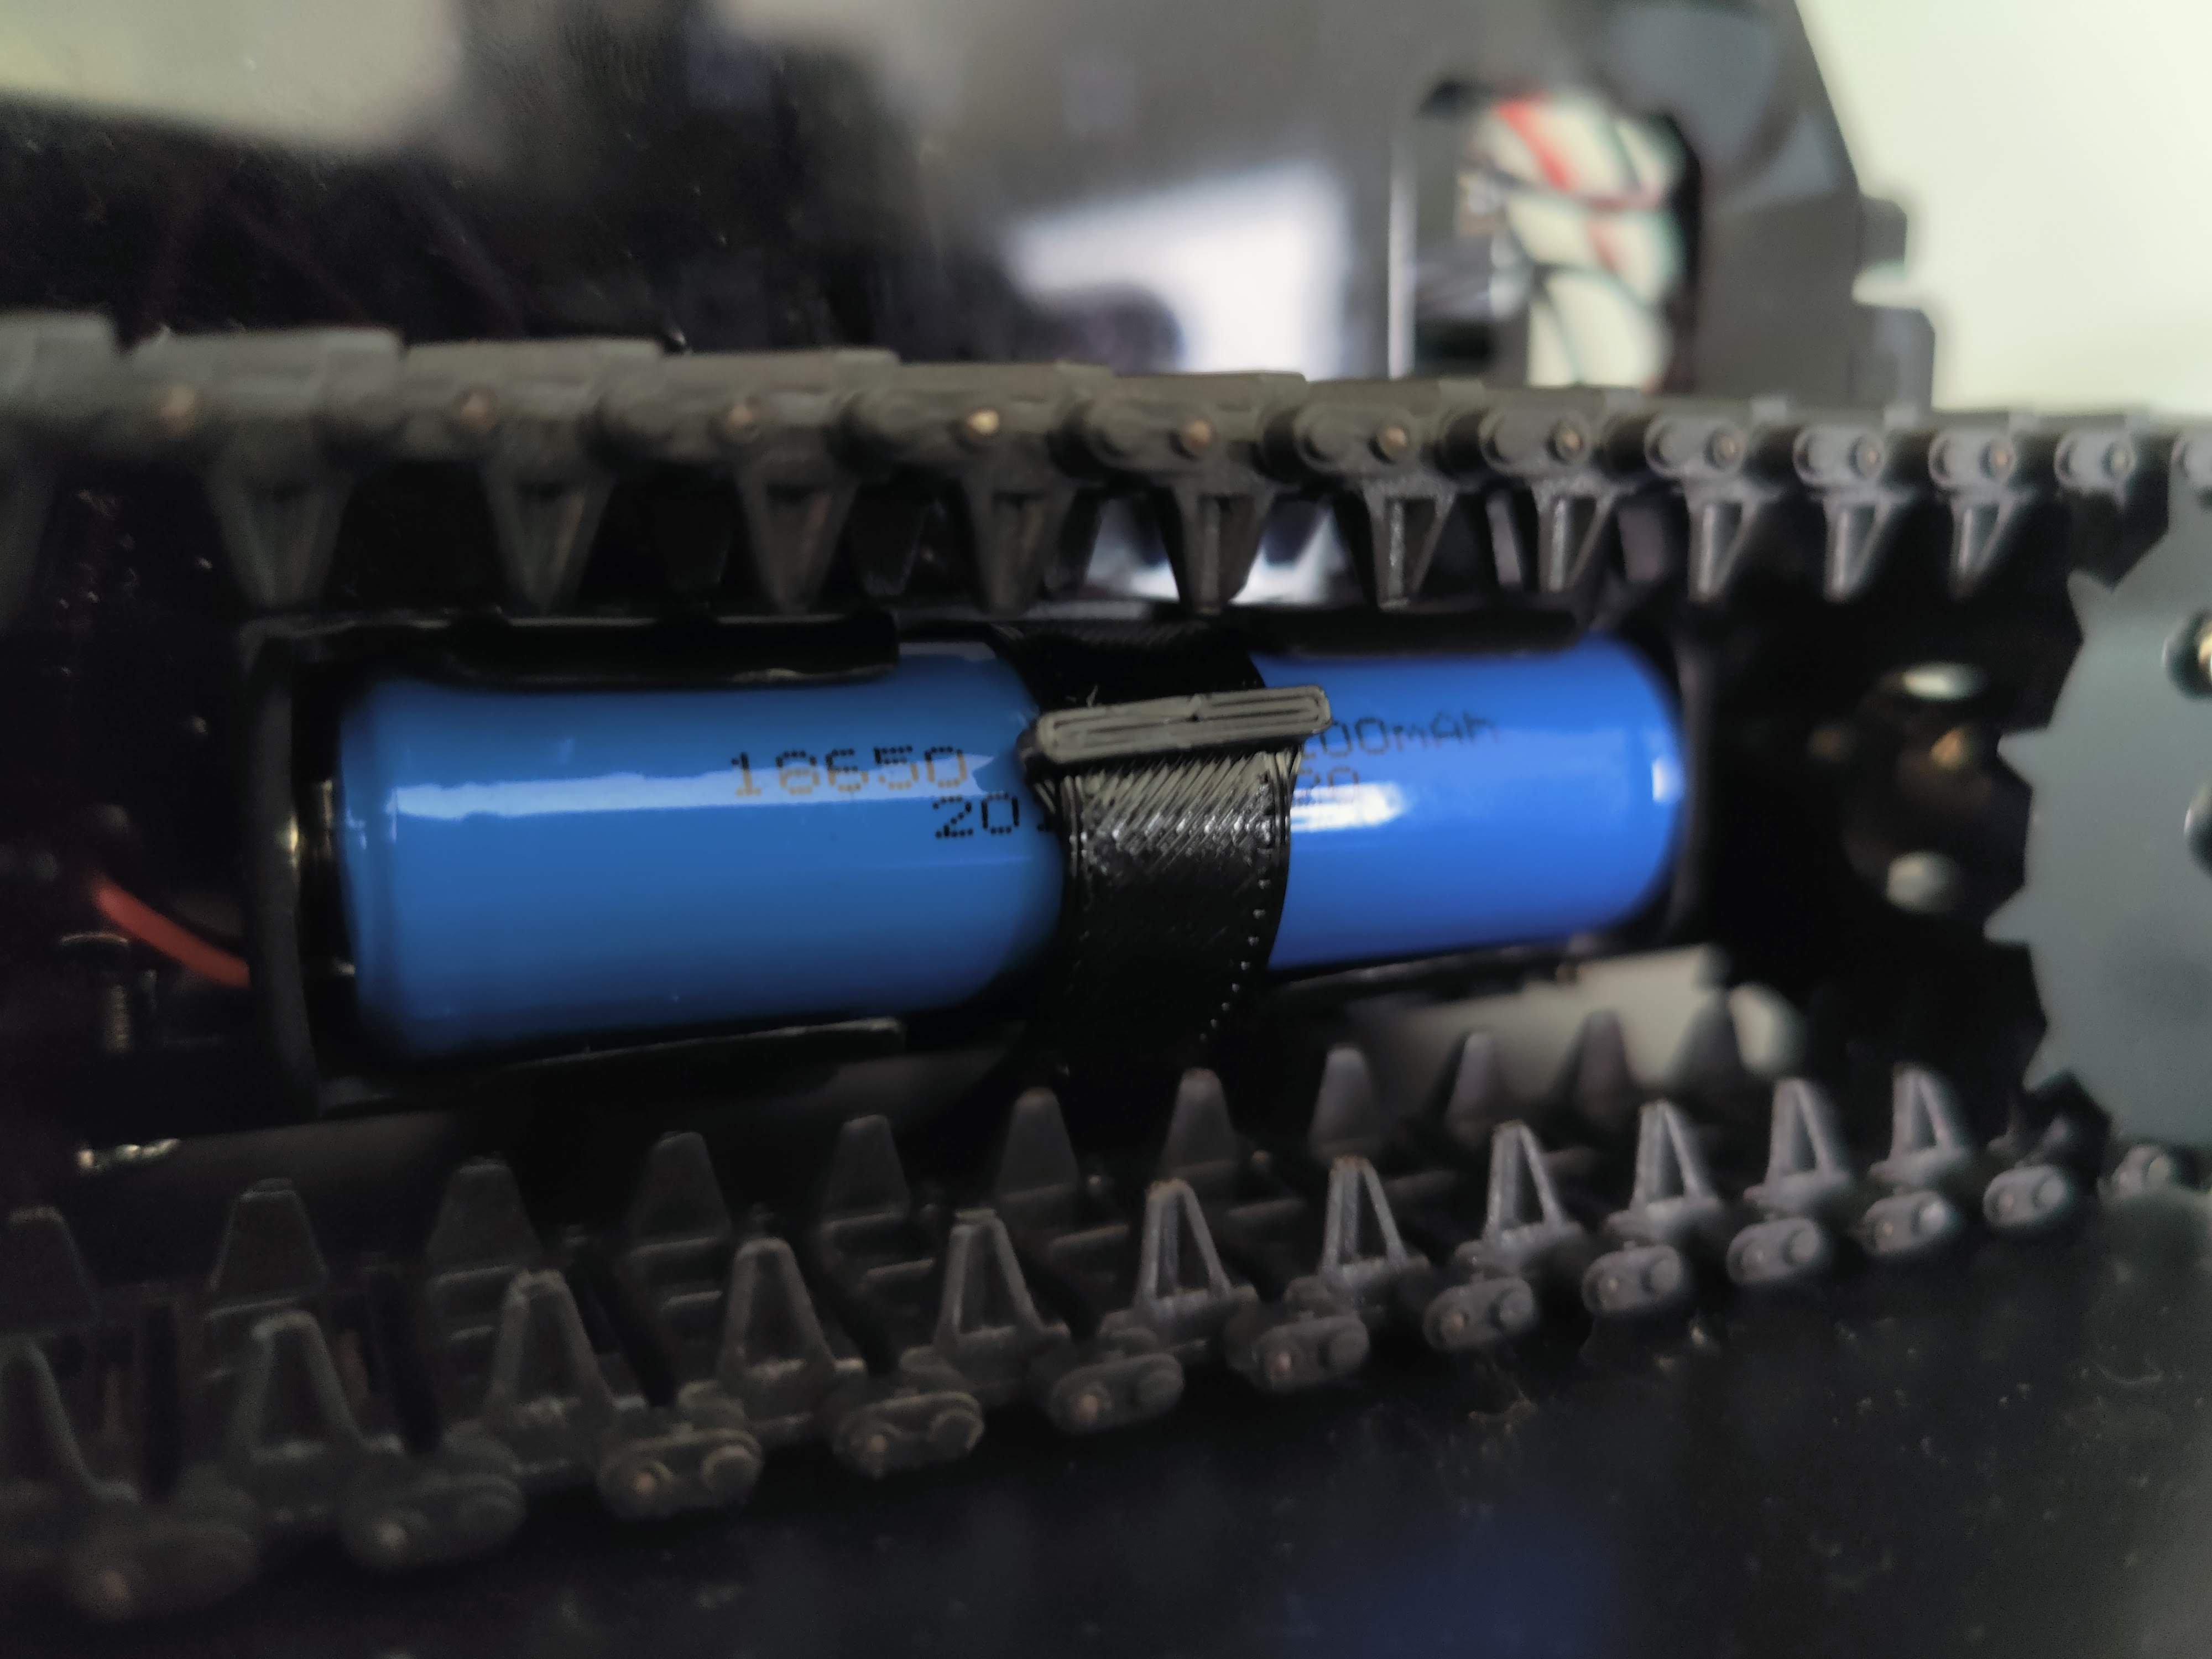 18650 TPU battery strap